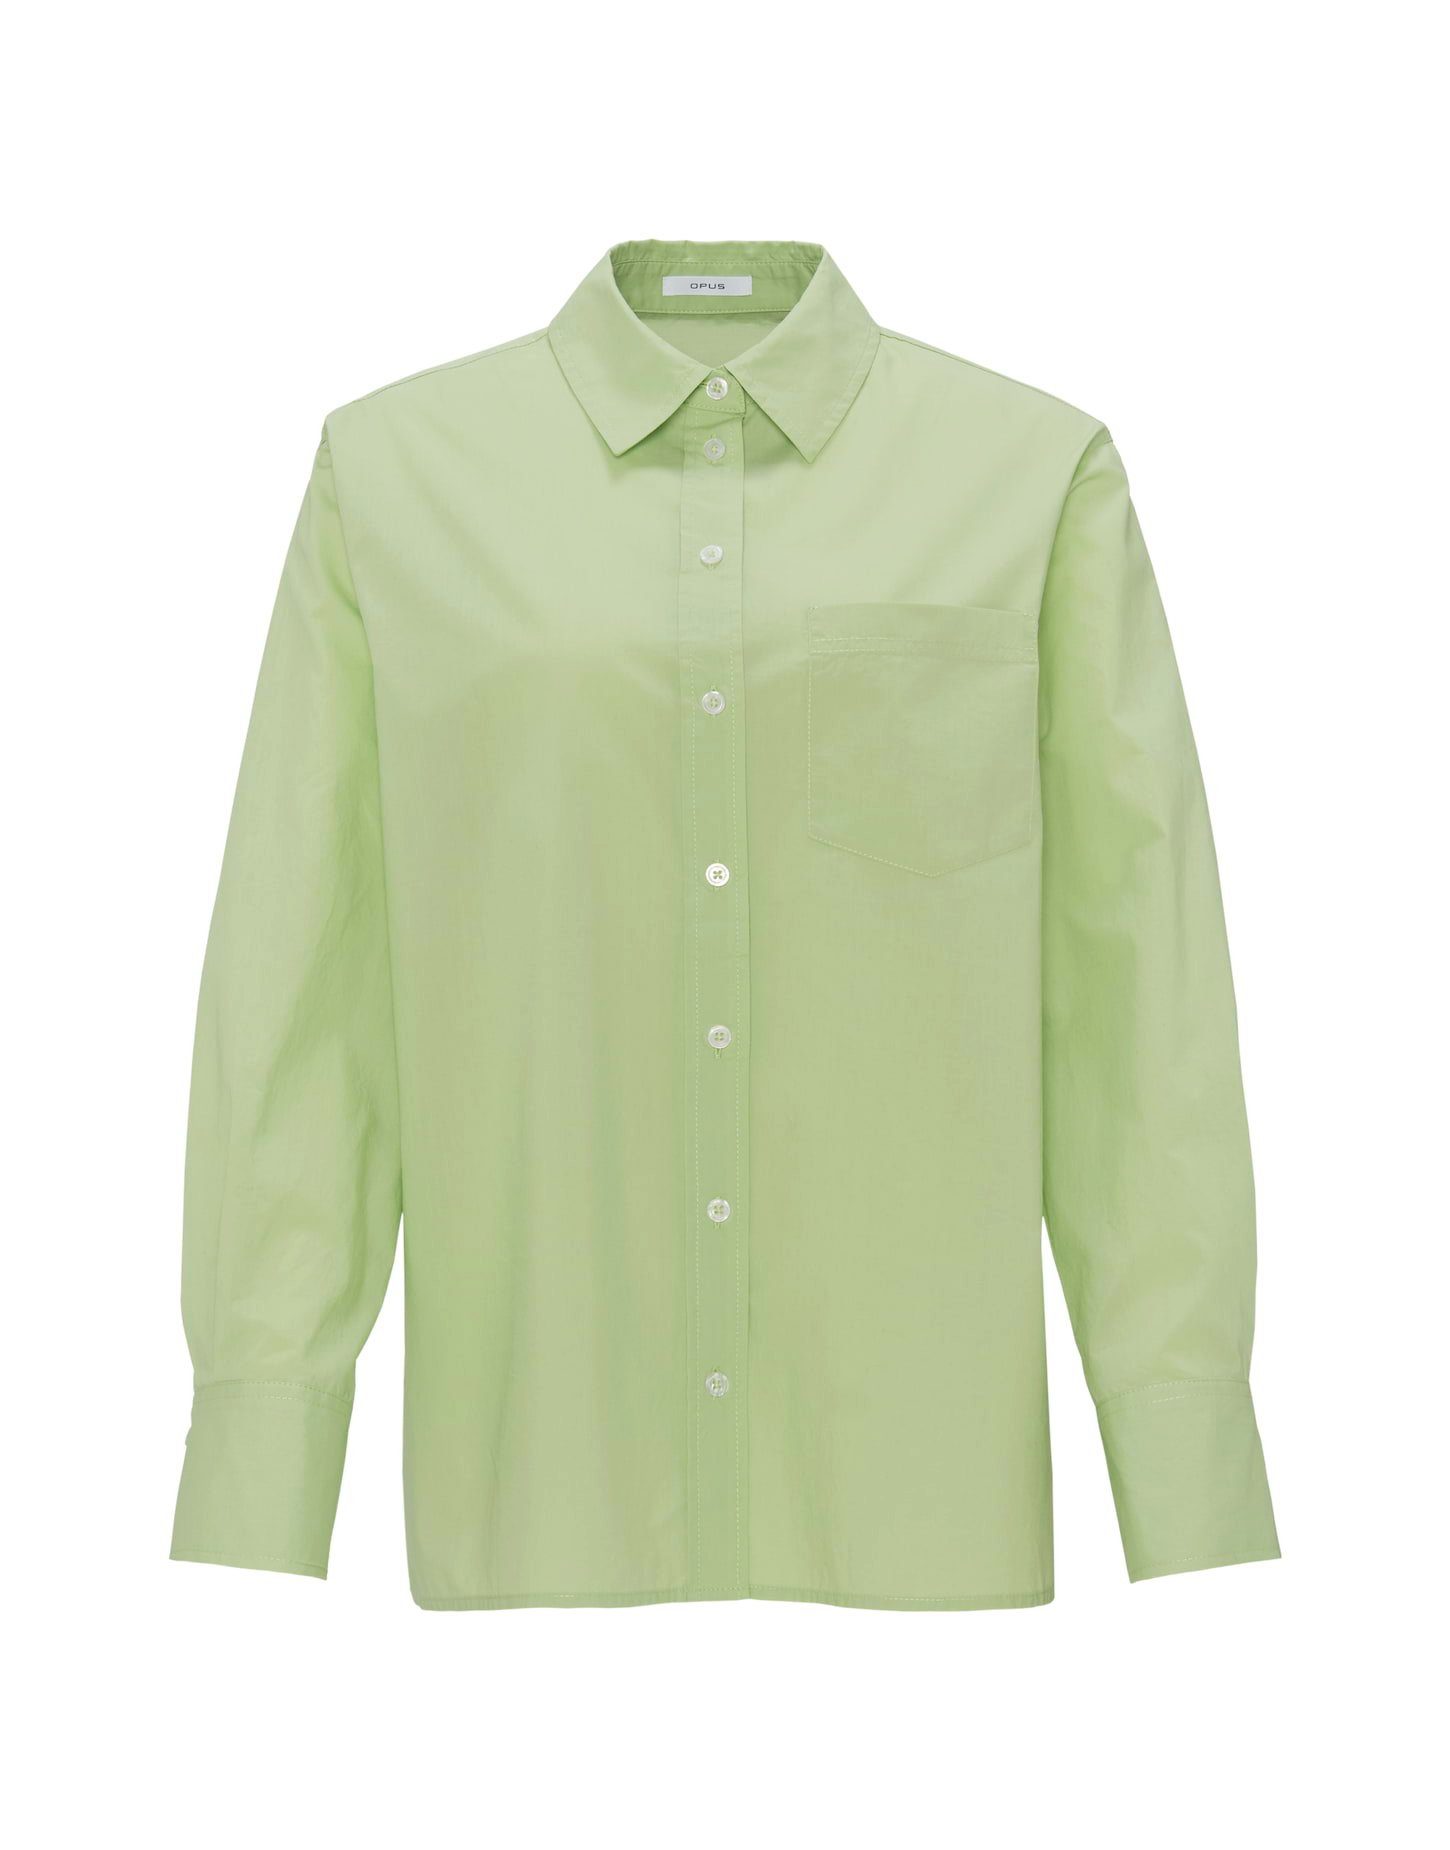 Grüne OPUS Blusen für Damen online kaufen | OTTO